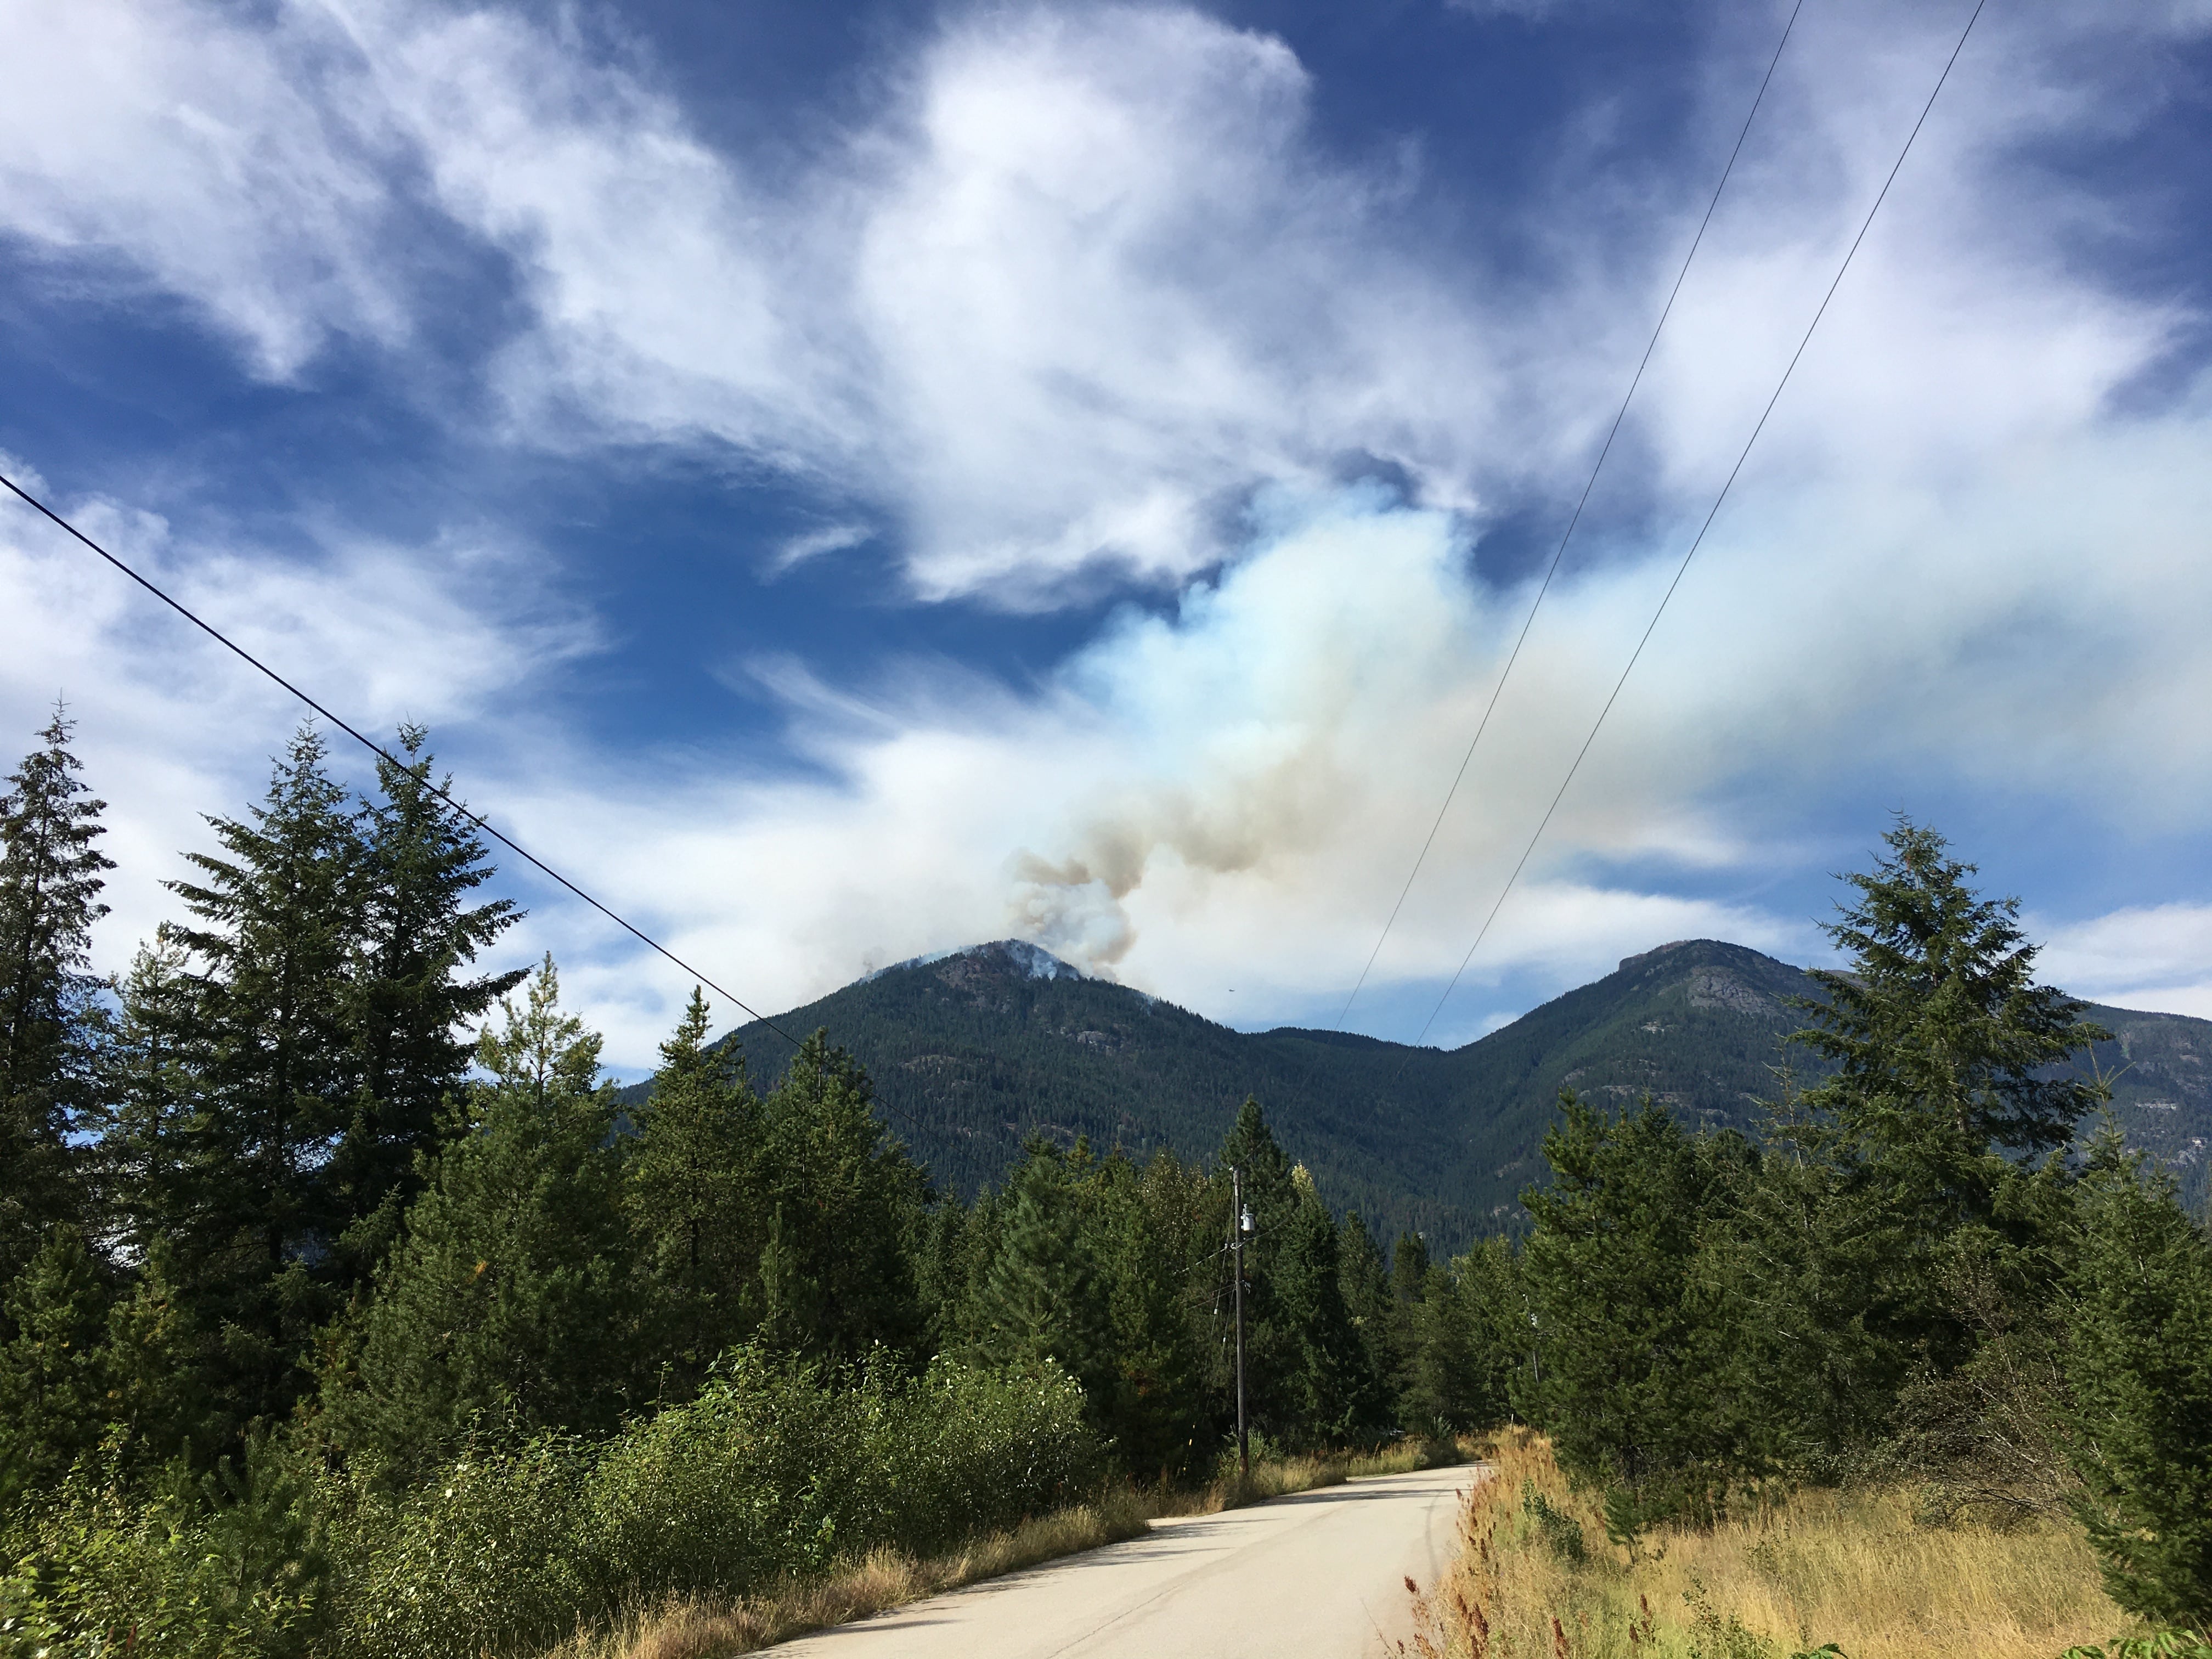 BC Wildfire Service still battling pesky Talbott Creek fire